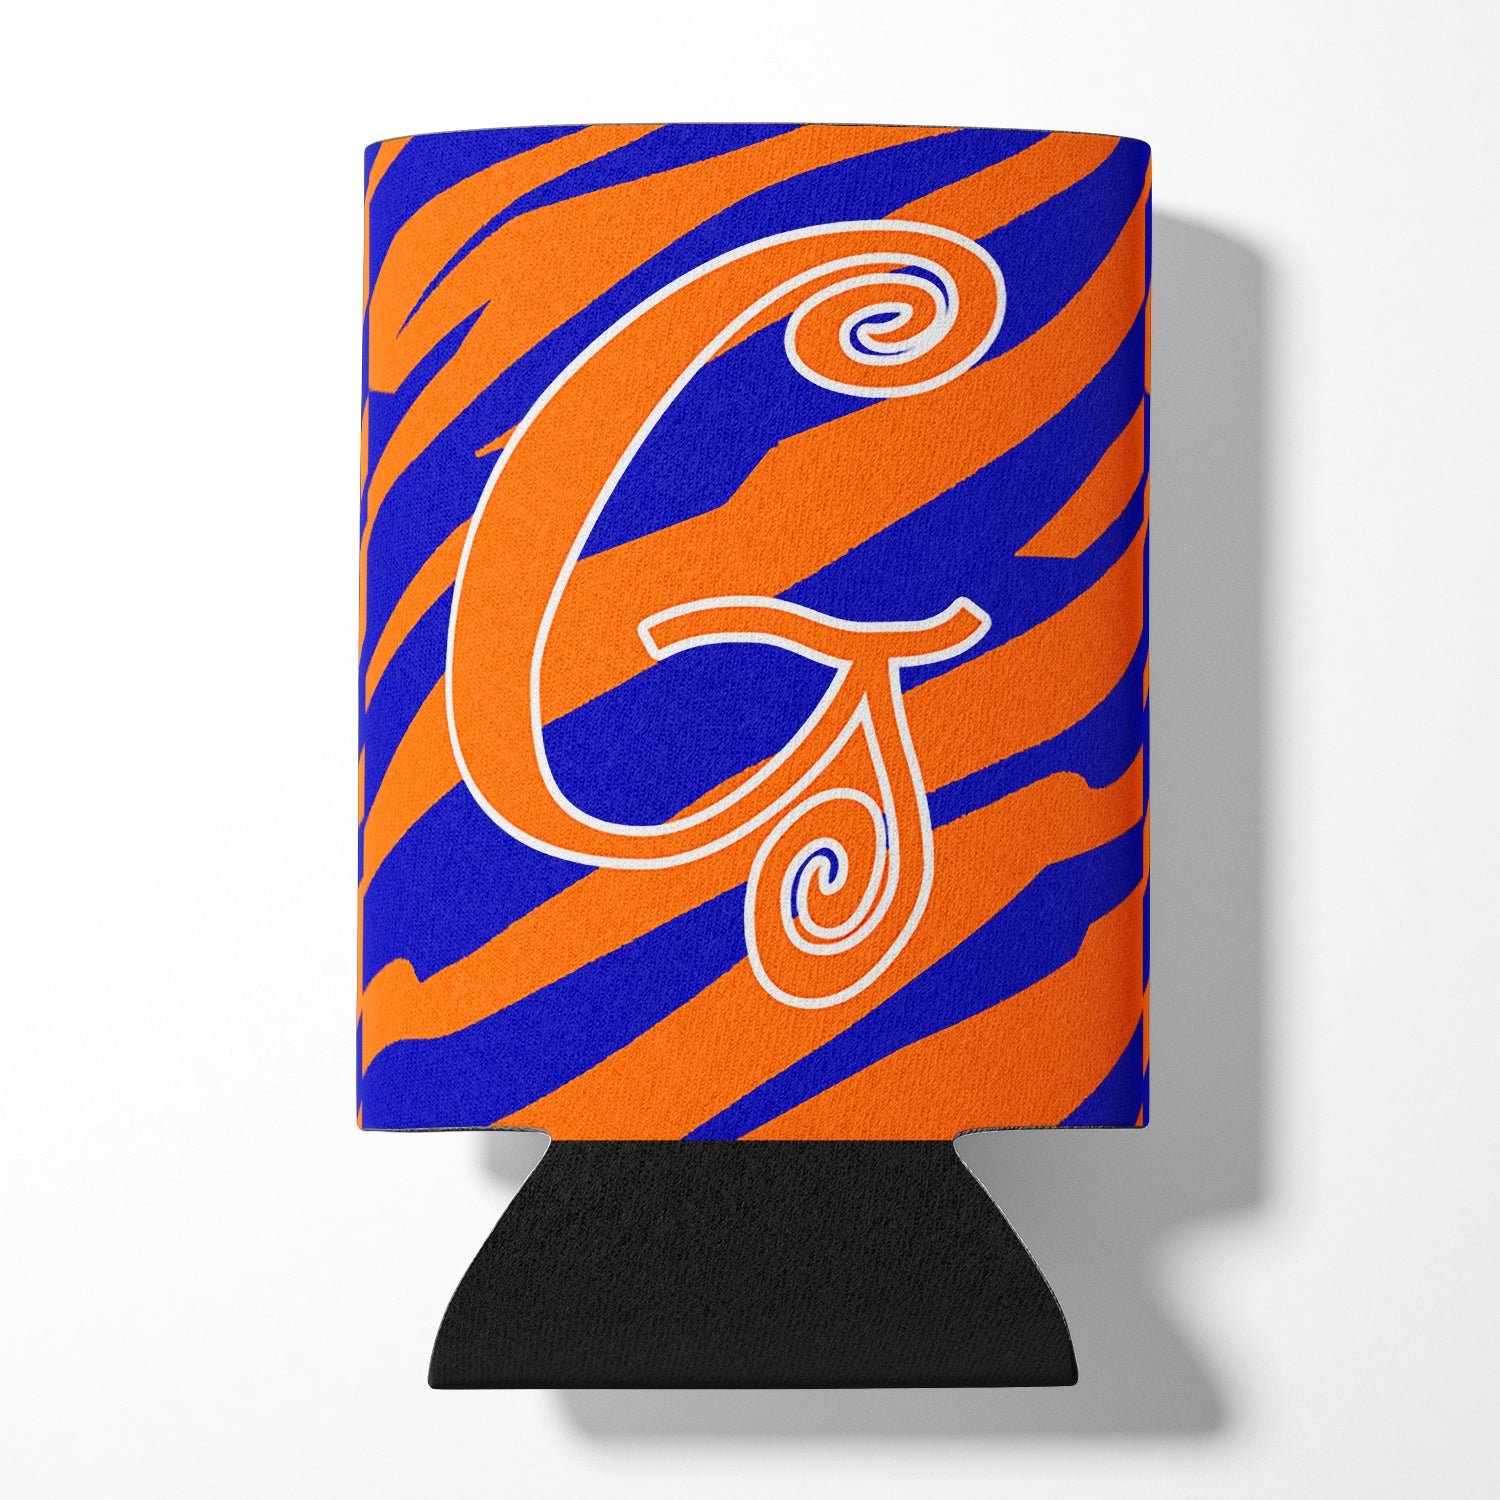 Monogramme initial de la lettre G - Tiger Stripe Blue and Orange Can Beverage Insulator Hugger